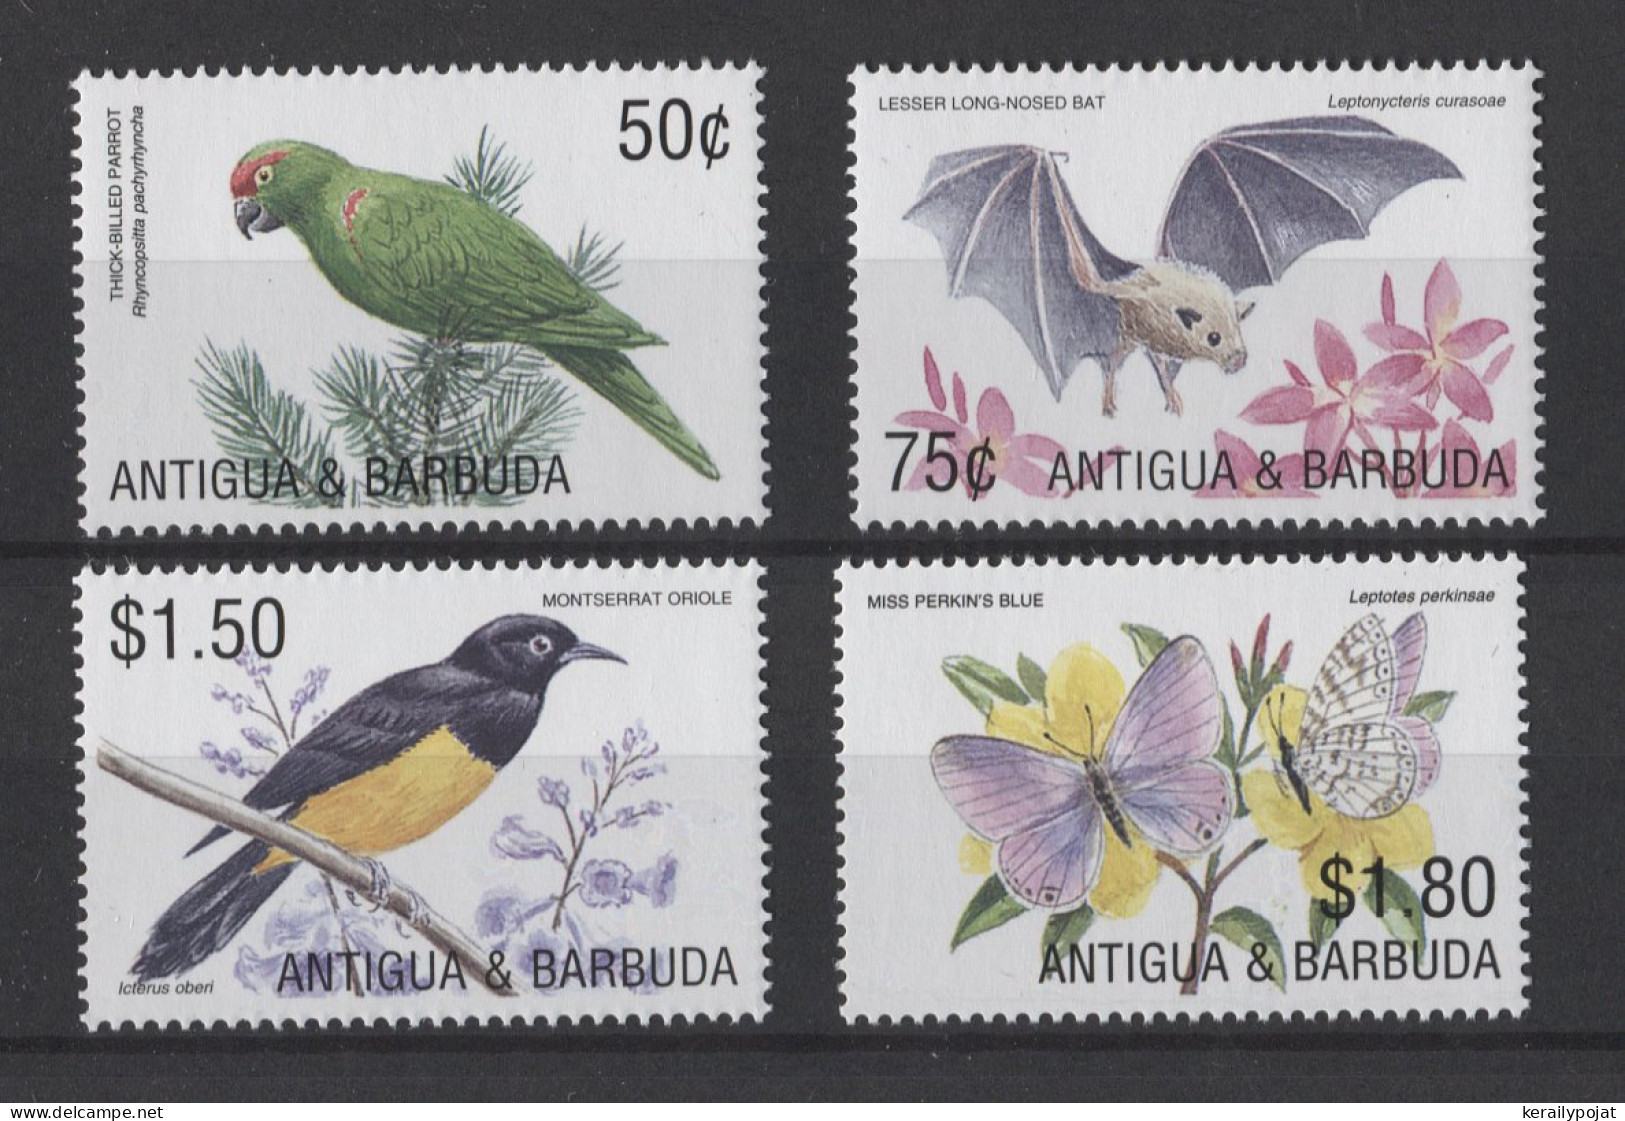 Antigua - 2002 Fauna Of The Caribbean MNH__(TH-24765) - Antigua And Barbuda (1981-...)